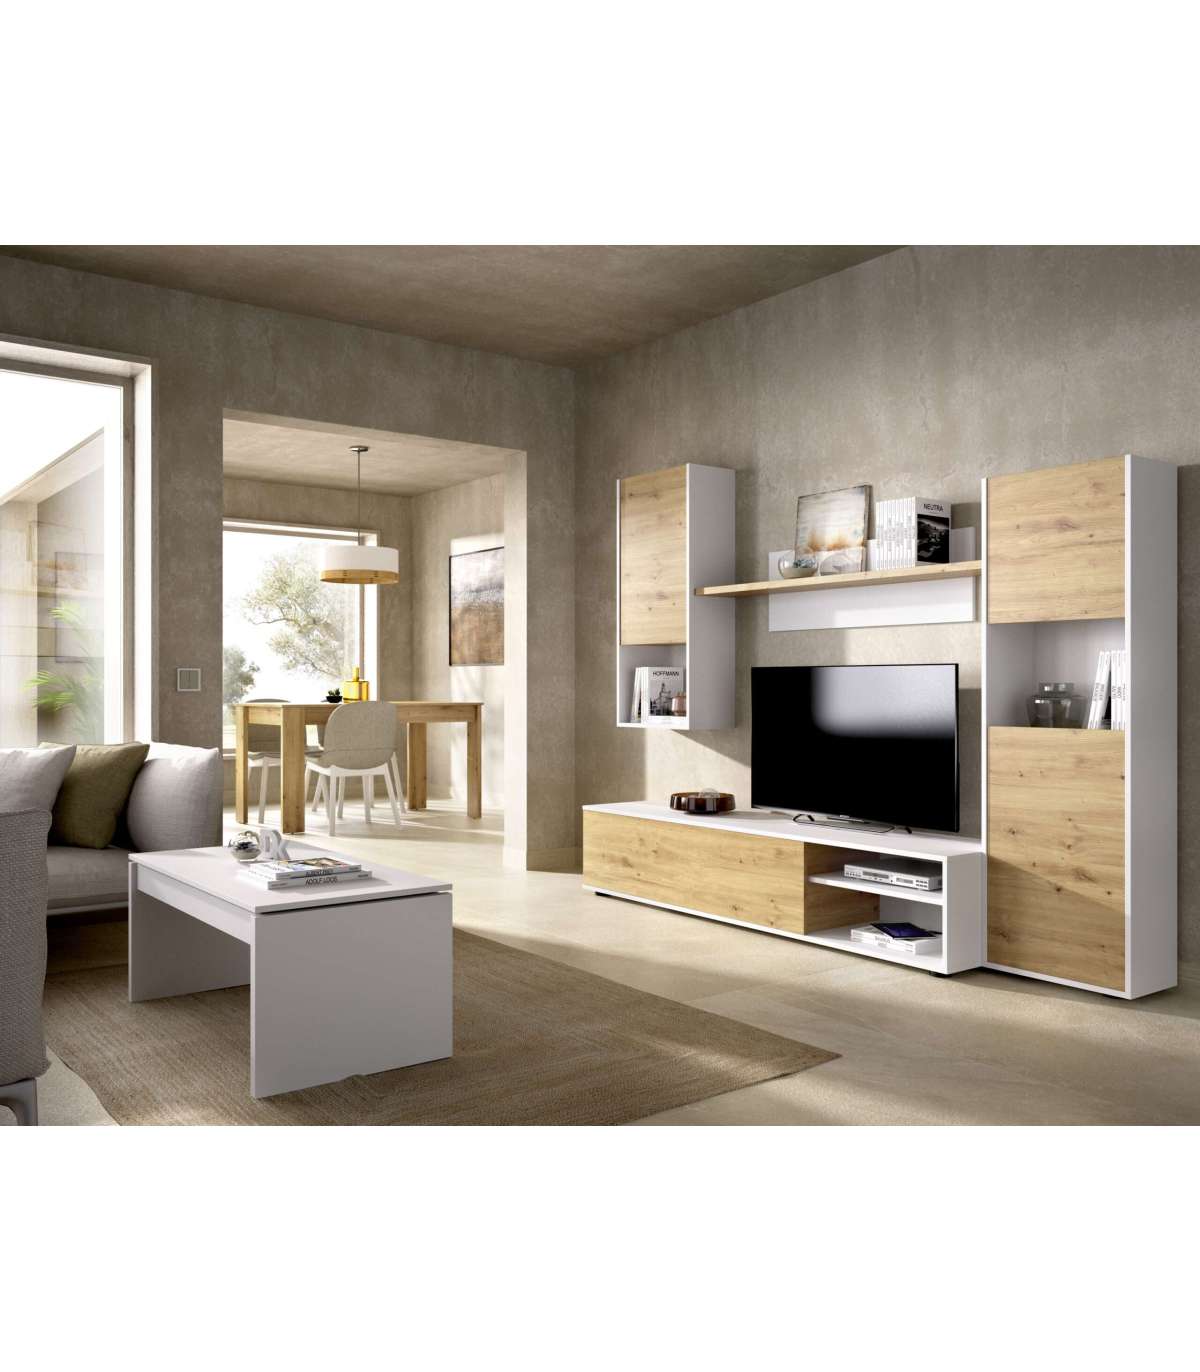 Muebles de salón modular en blanco y cambrian, vitrina más mueble tv